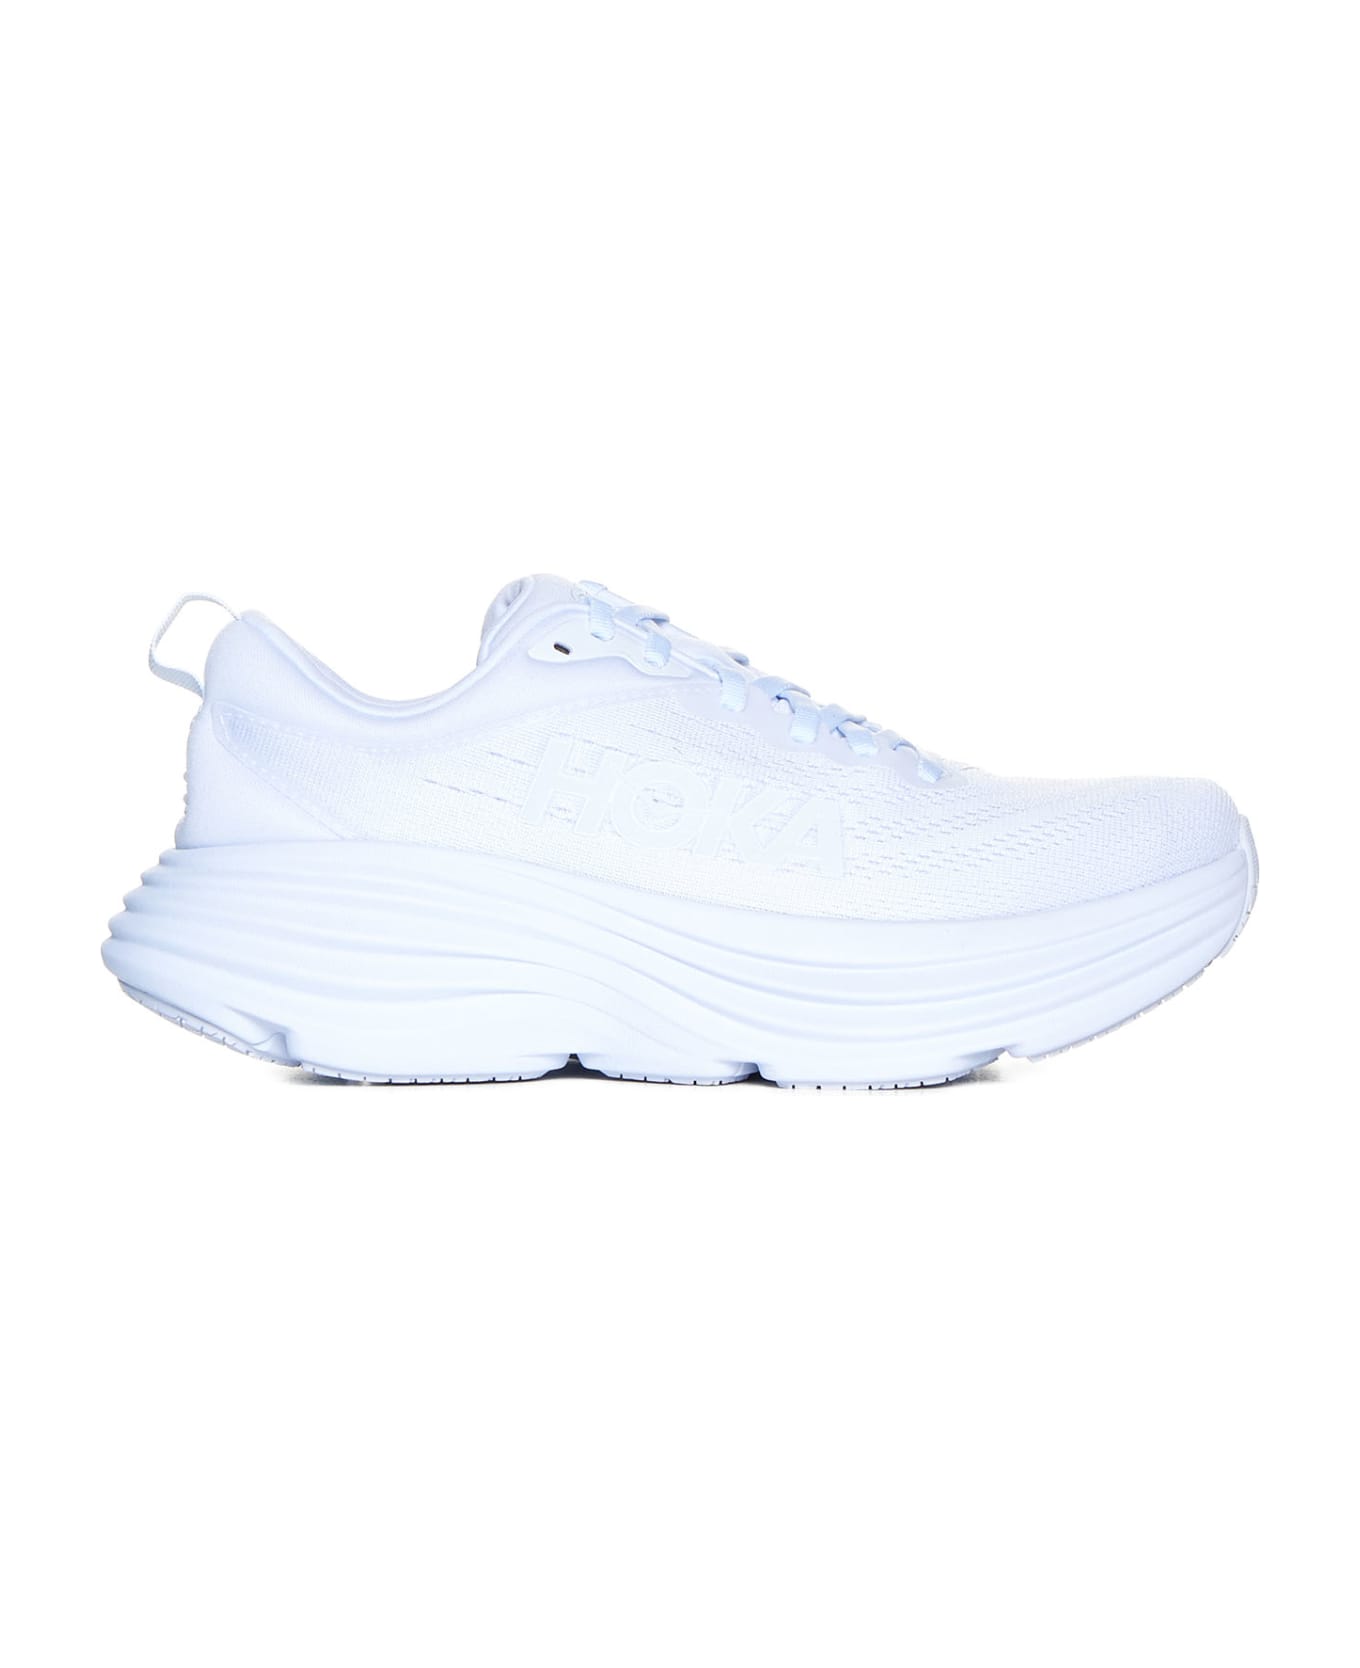 Hoka Sneakers - White white ウェッジシューズ